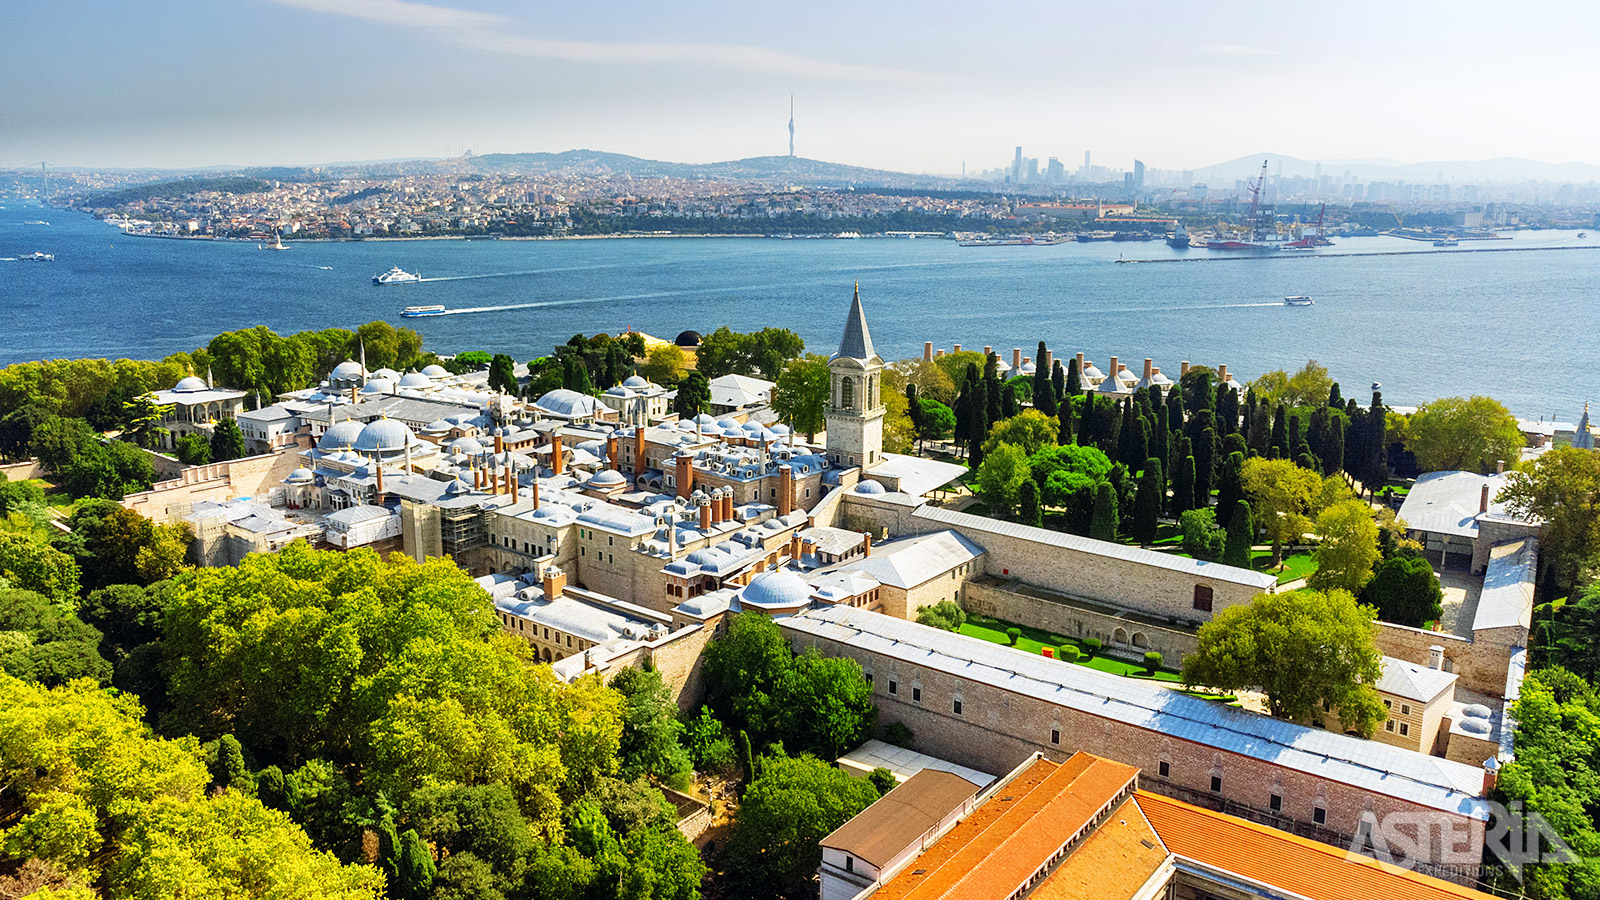 Het Topkapipaleis ligt op de Sarayburnu, een prominente landtong waar de Bosporus, de Gouden Hoorn en de Zee van Marmara samenkomen